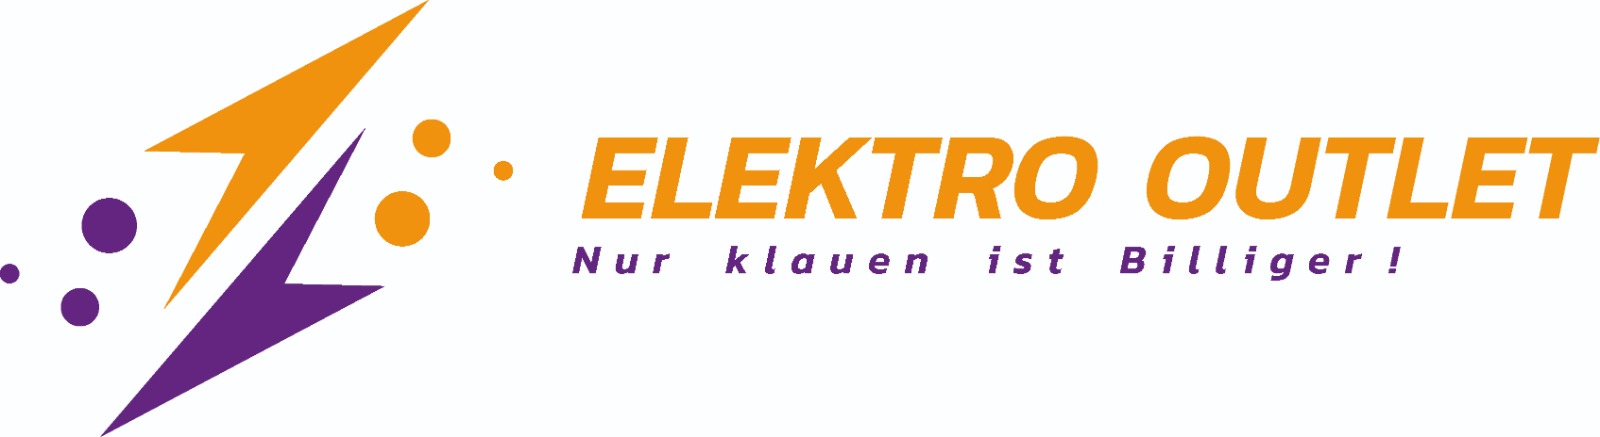 (c) Elektro-outlet.de